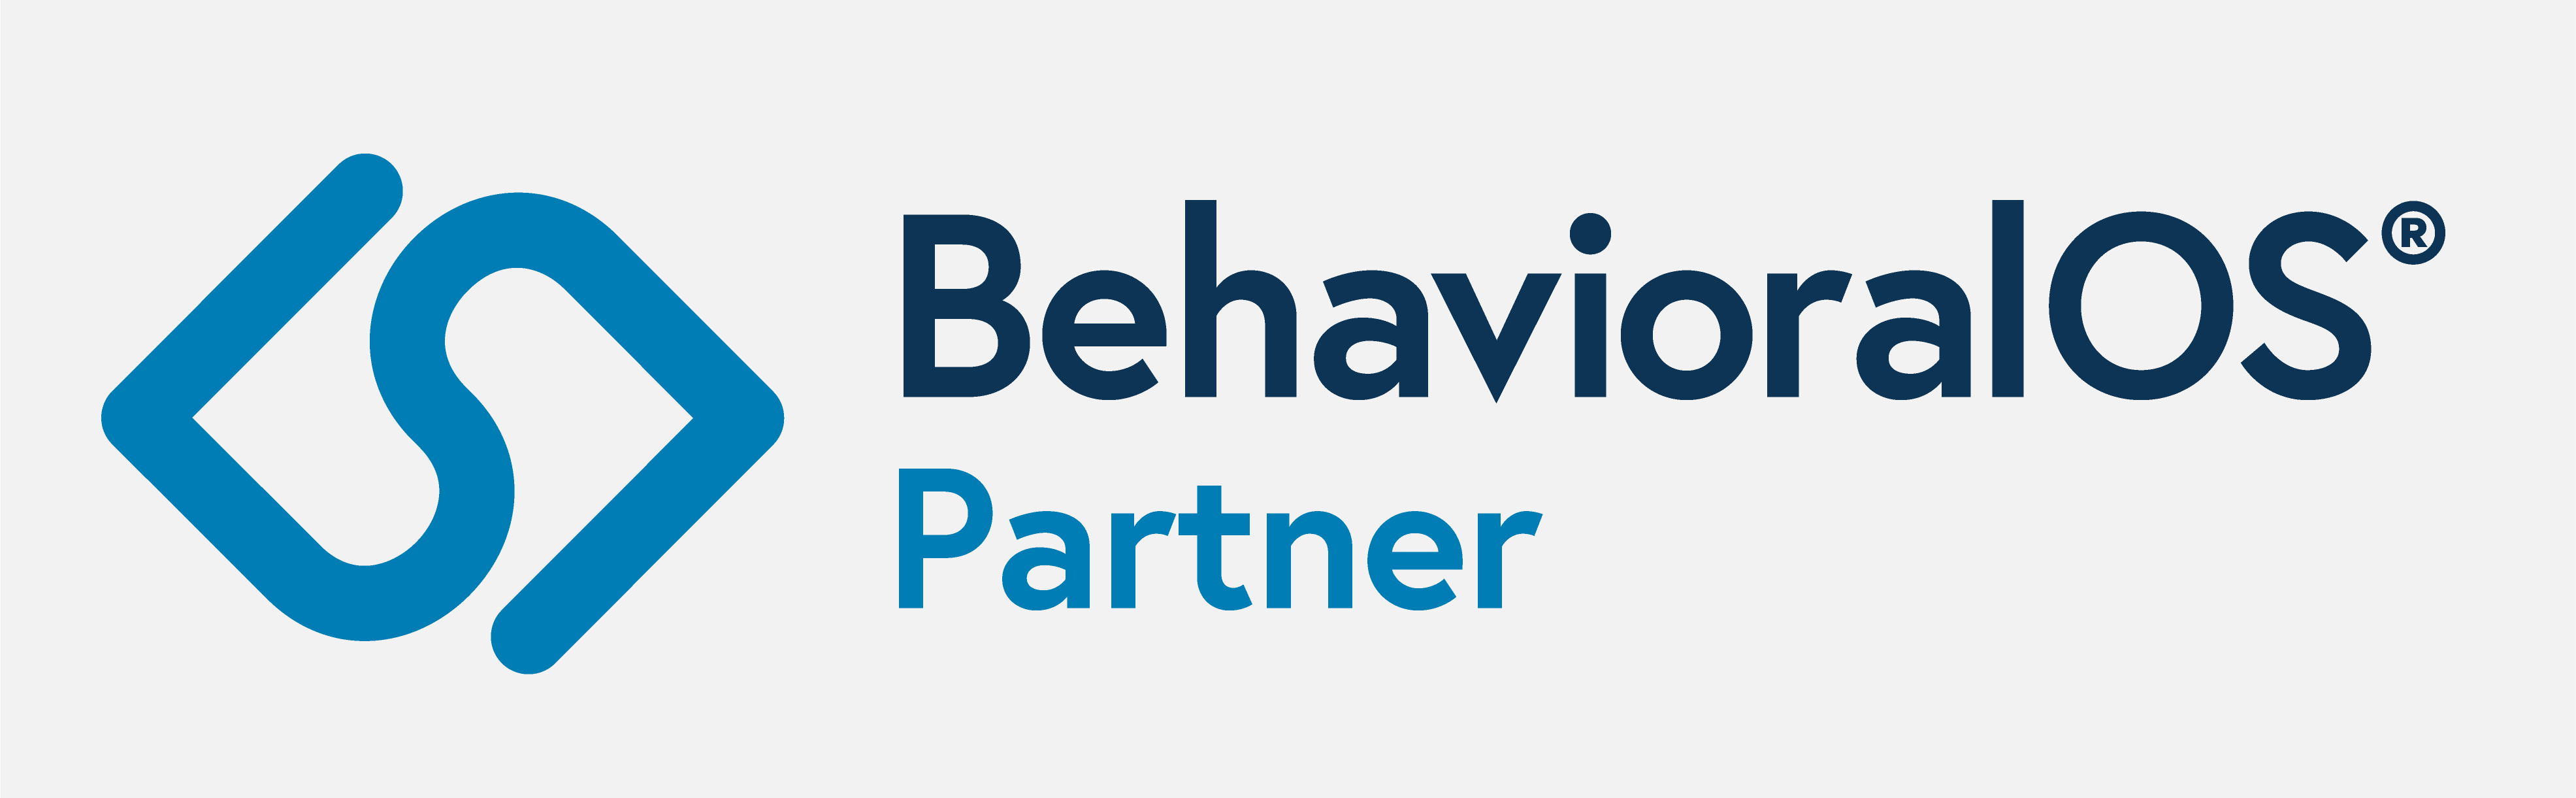 BehavioralOS Authorized Partner